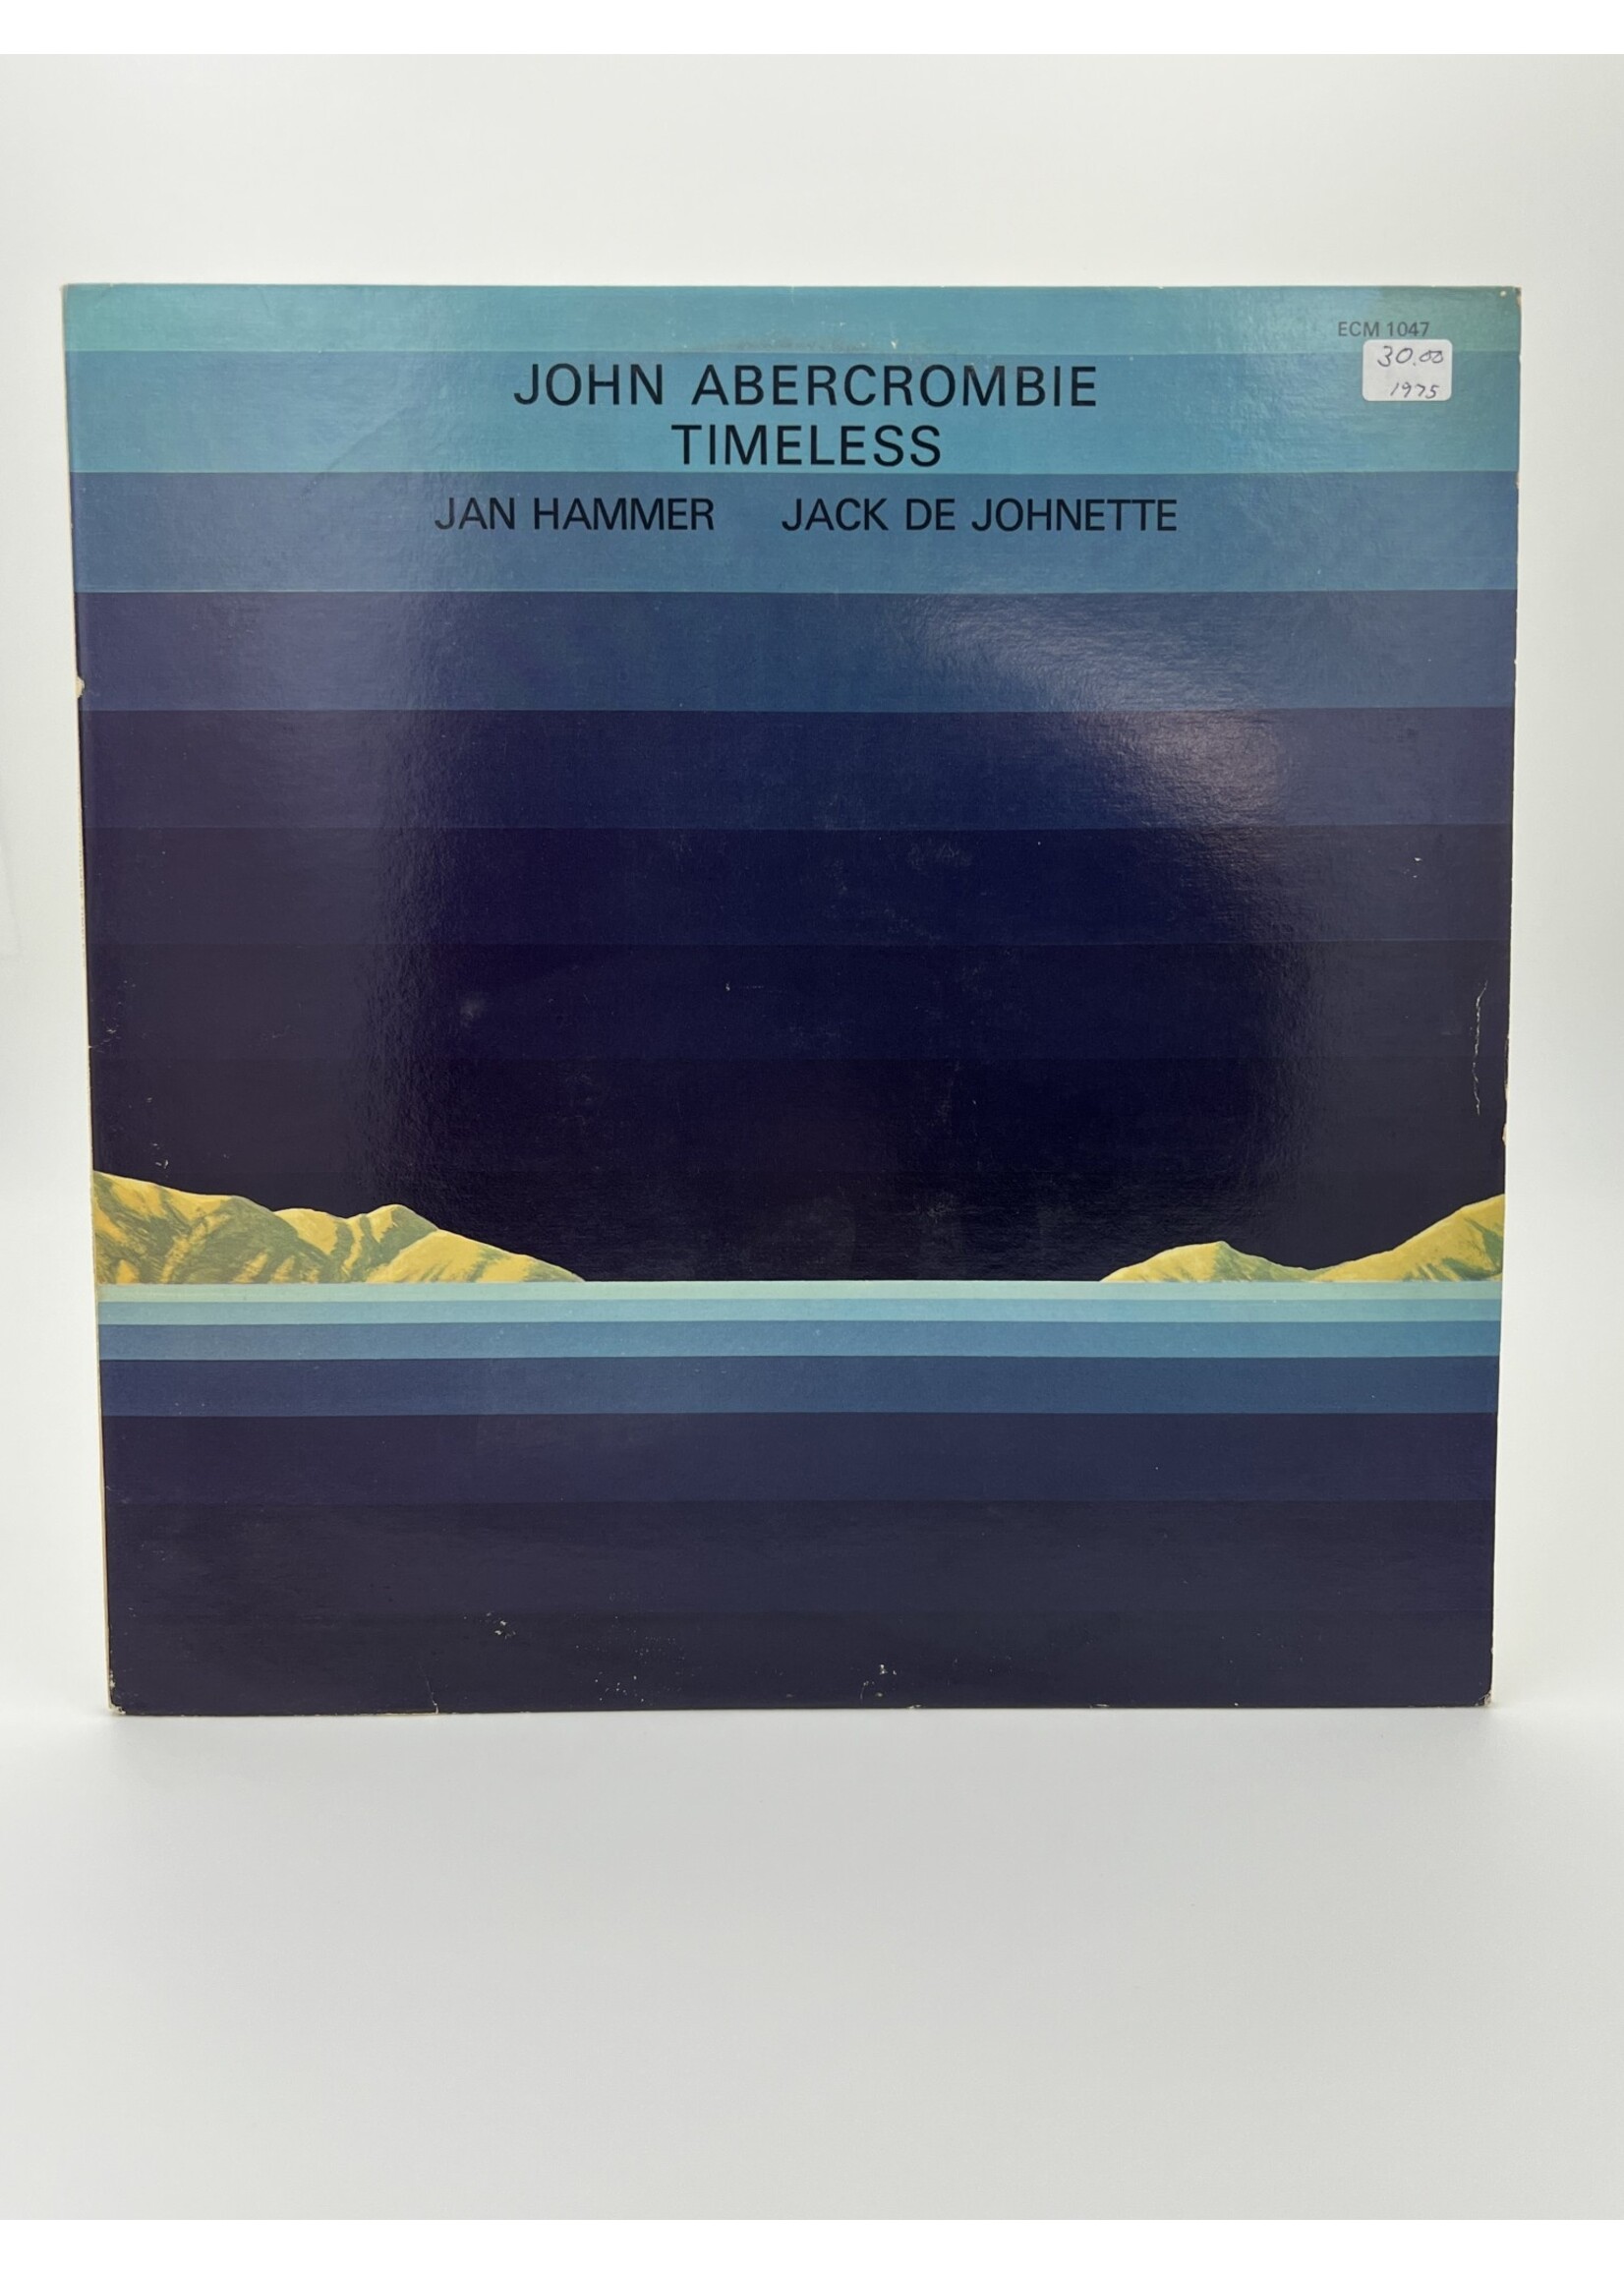 LP   John Abercrombie Jan Hammer Jack De Johnette Timeless LP Record